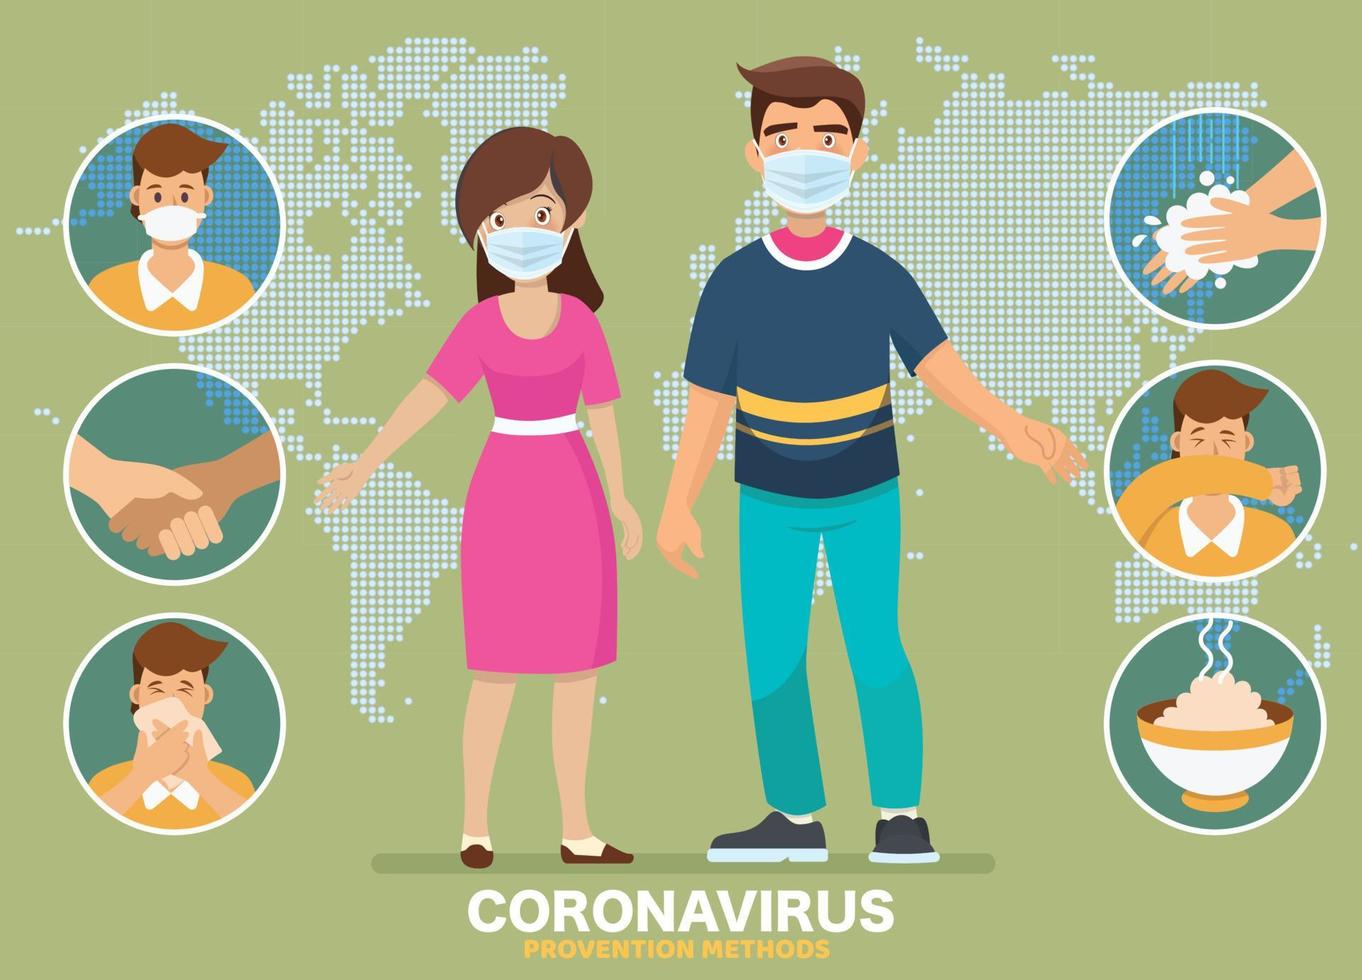 prevención del coronavirus covid-19. papá y mamá explican infografías, usan mascarillas, se lavan las manos, comen alimentos calientes y evitan ir a lugares de riesgo. vector